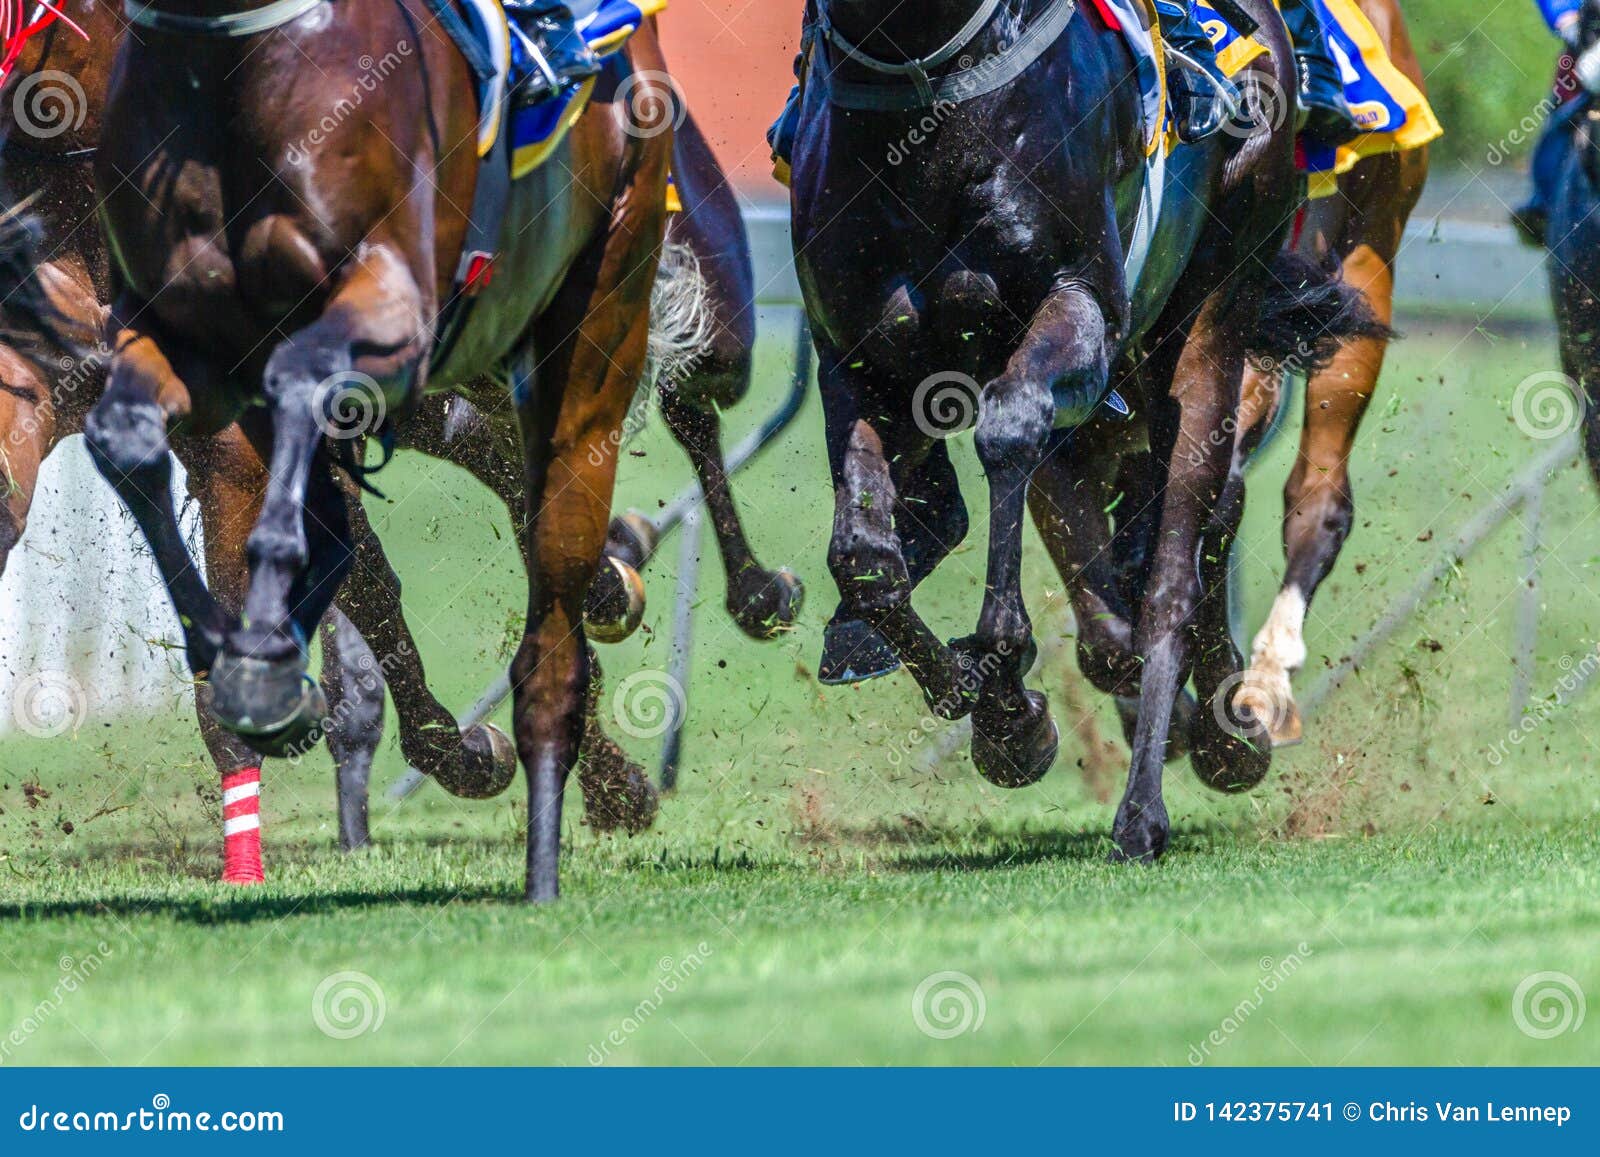 horse racing close-up hoofs legs grass